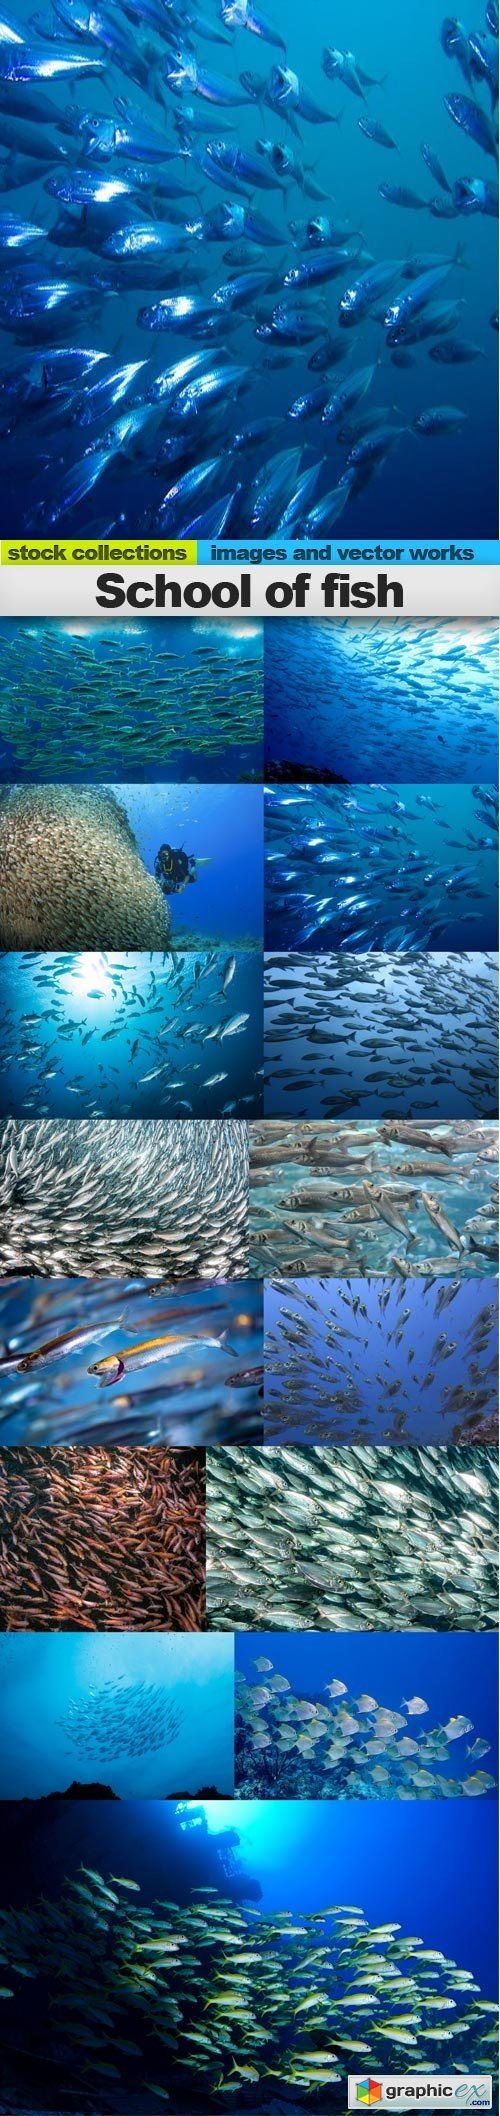 School of fish, 15 x UHQ JPEG